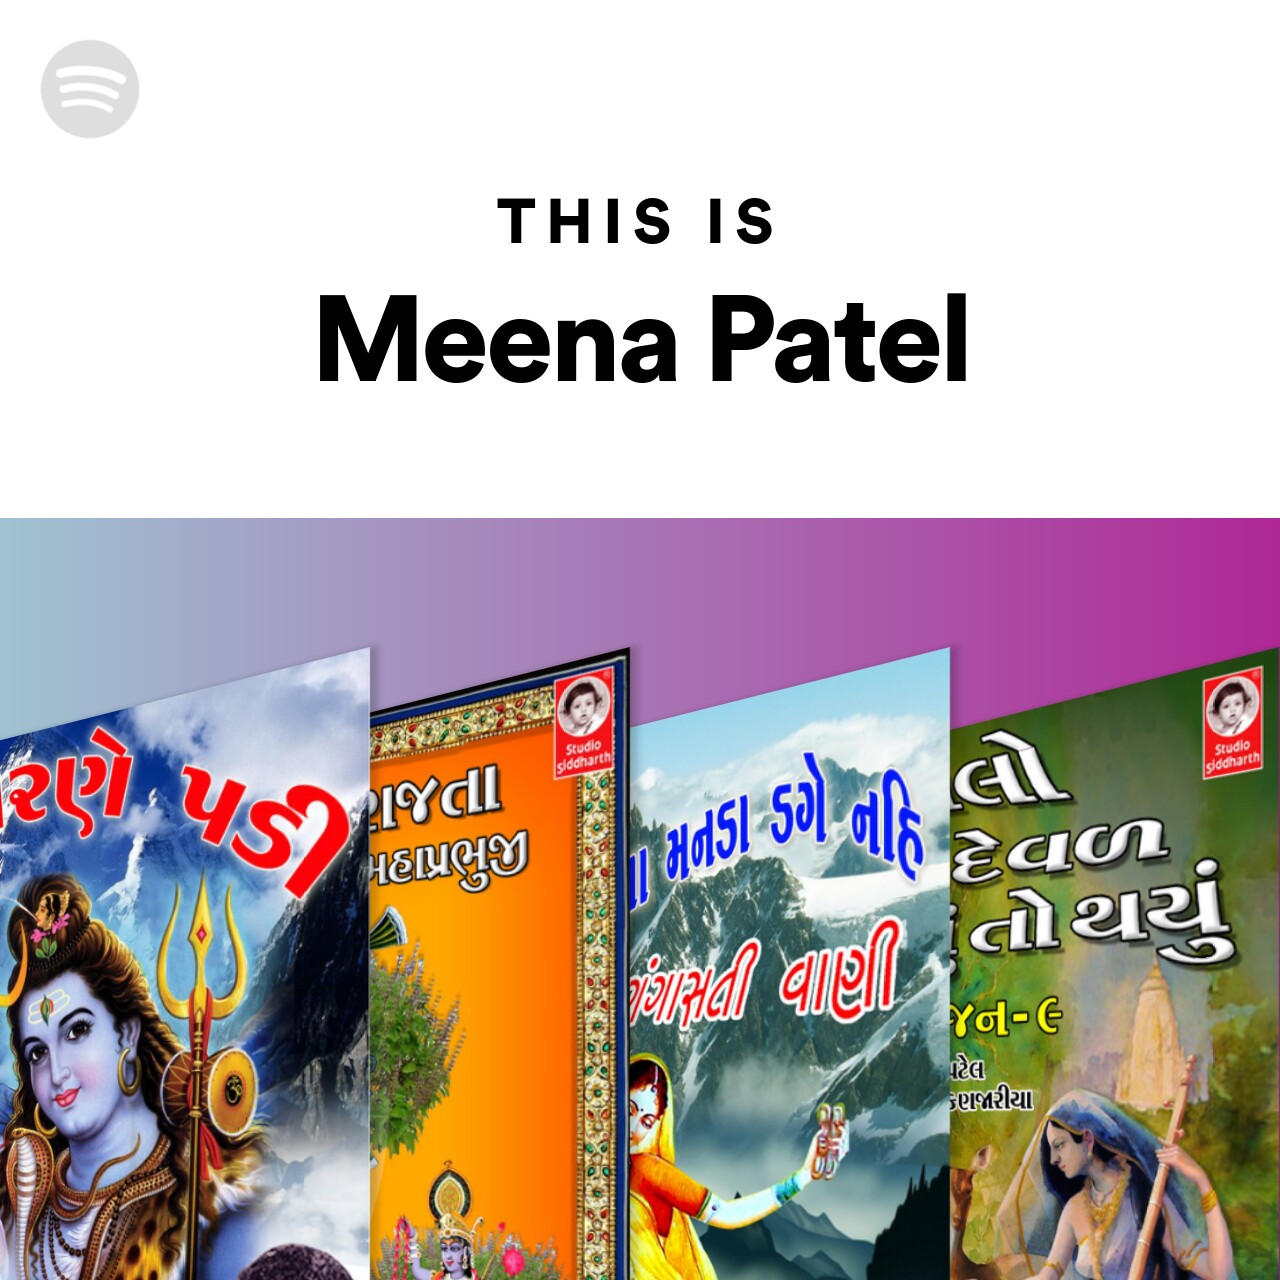 This Is Meena Patel